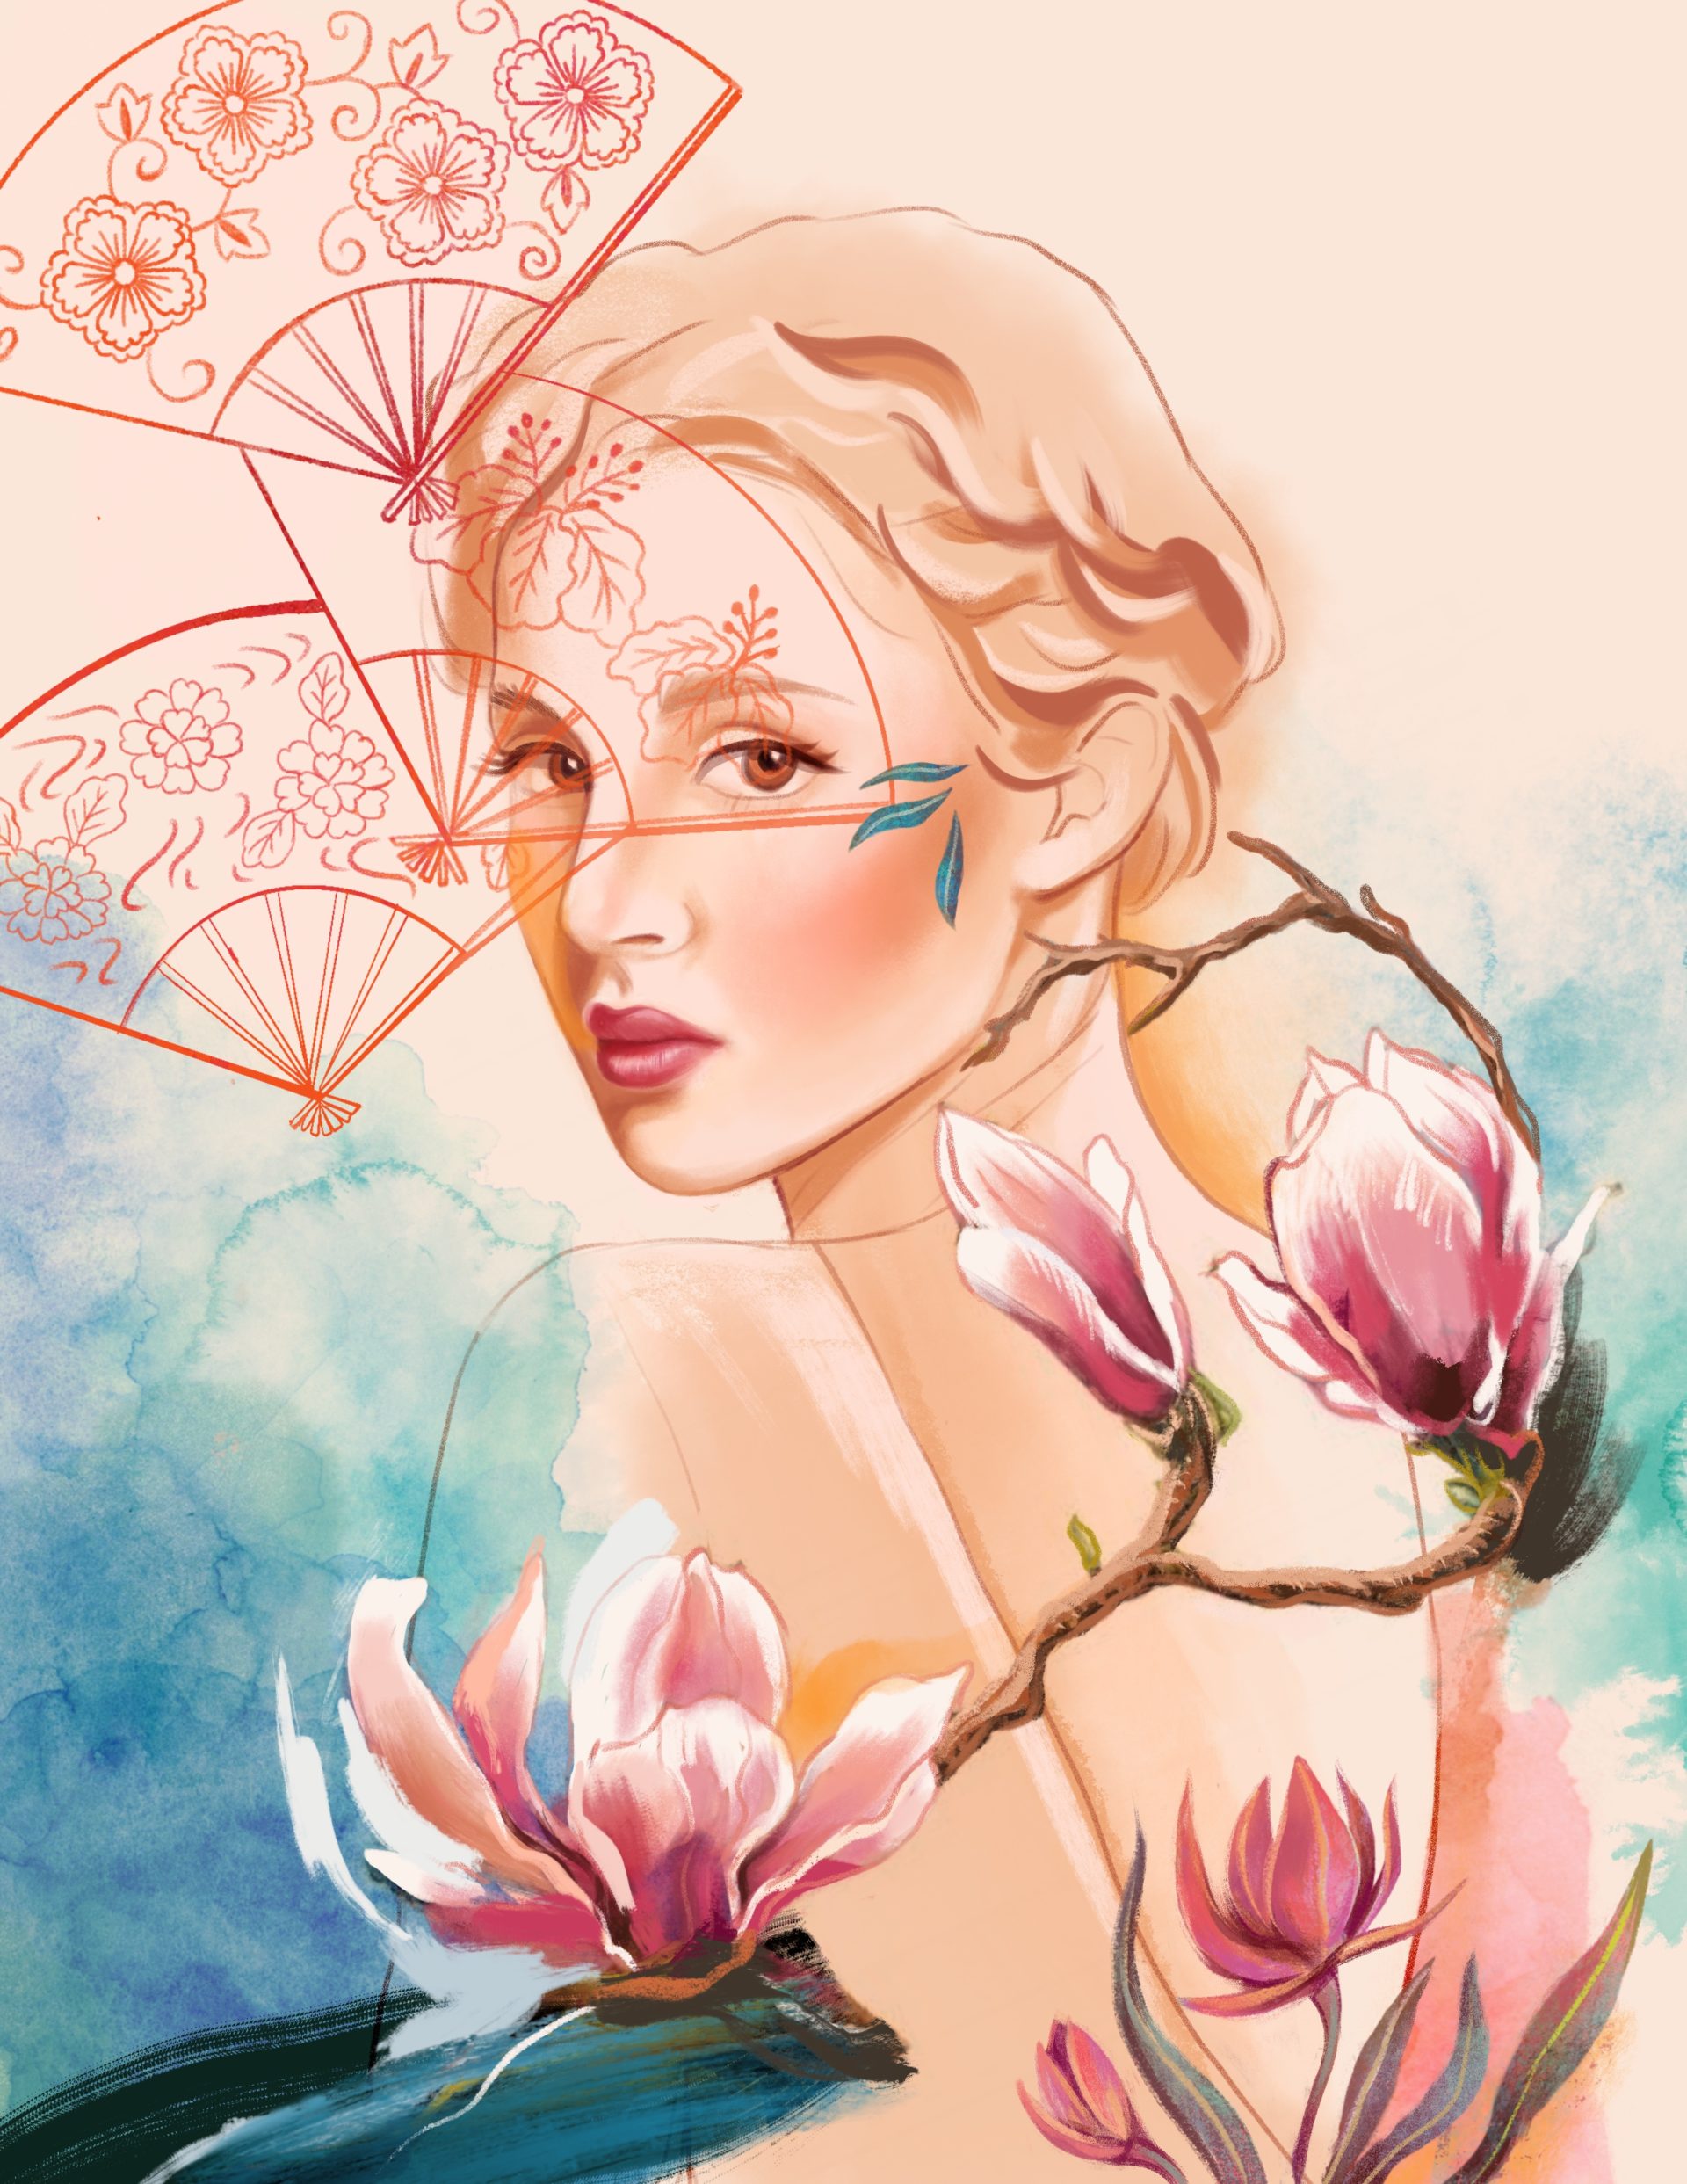 Illustration portrait woman, magnolia and fans